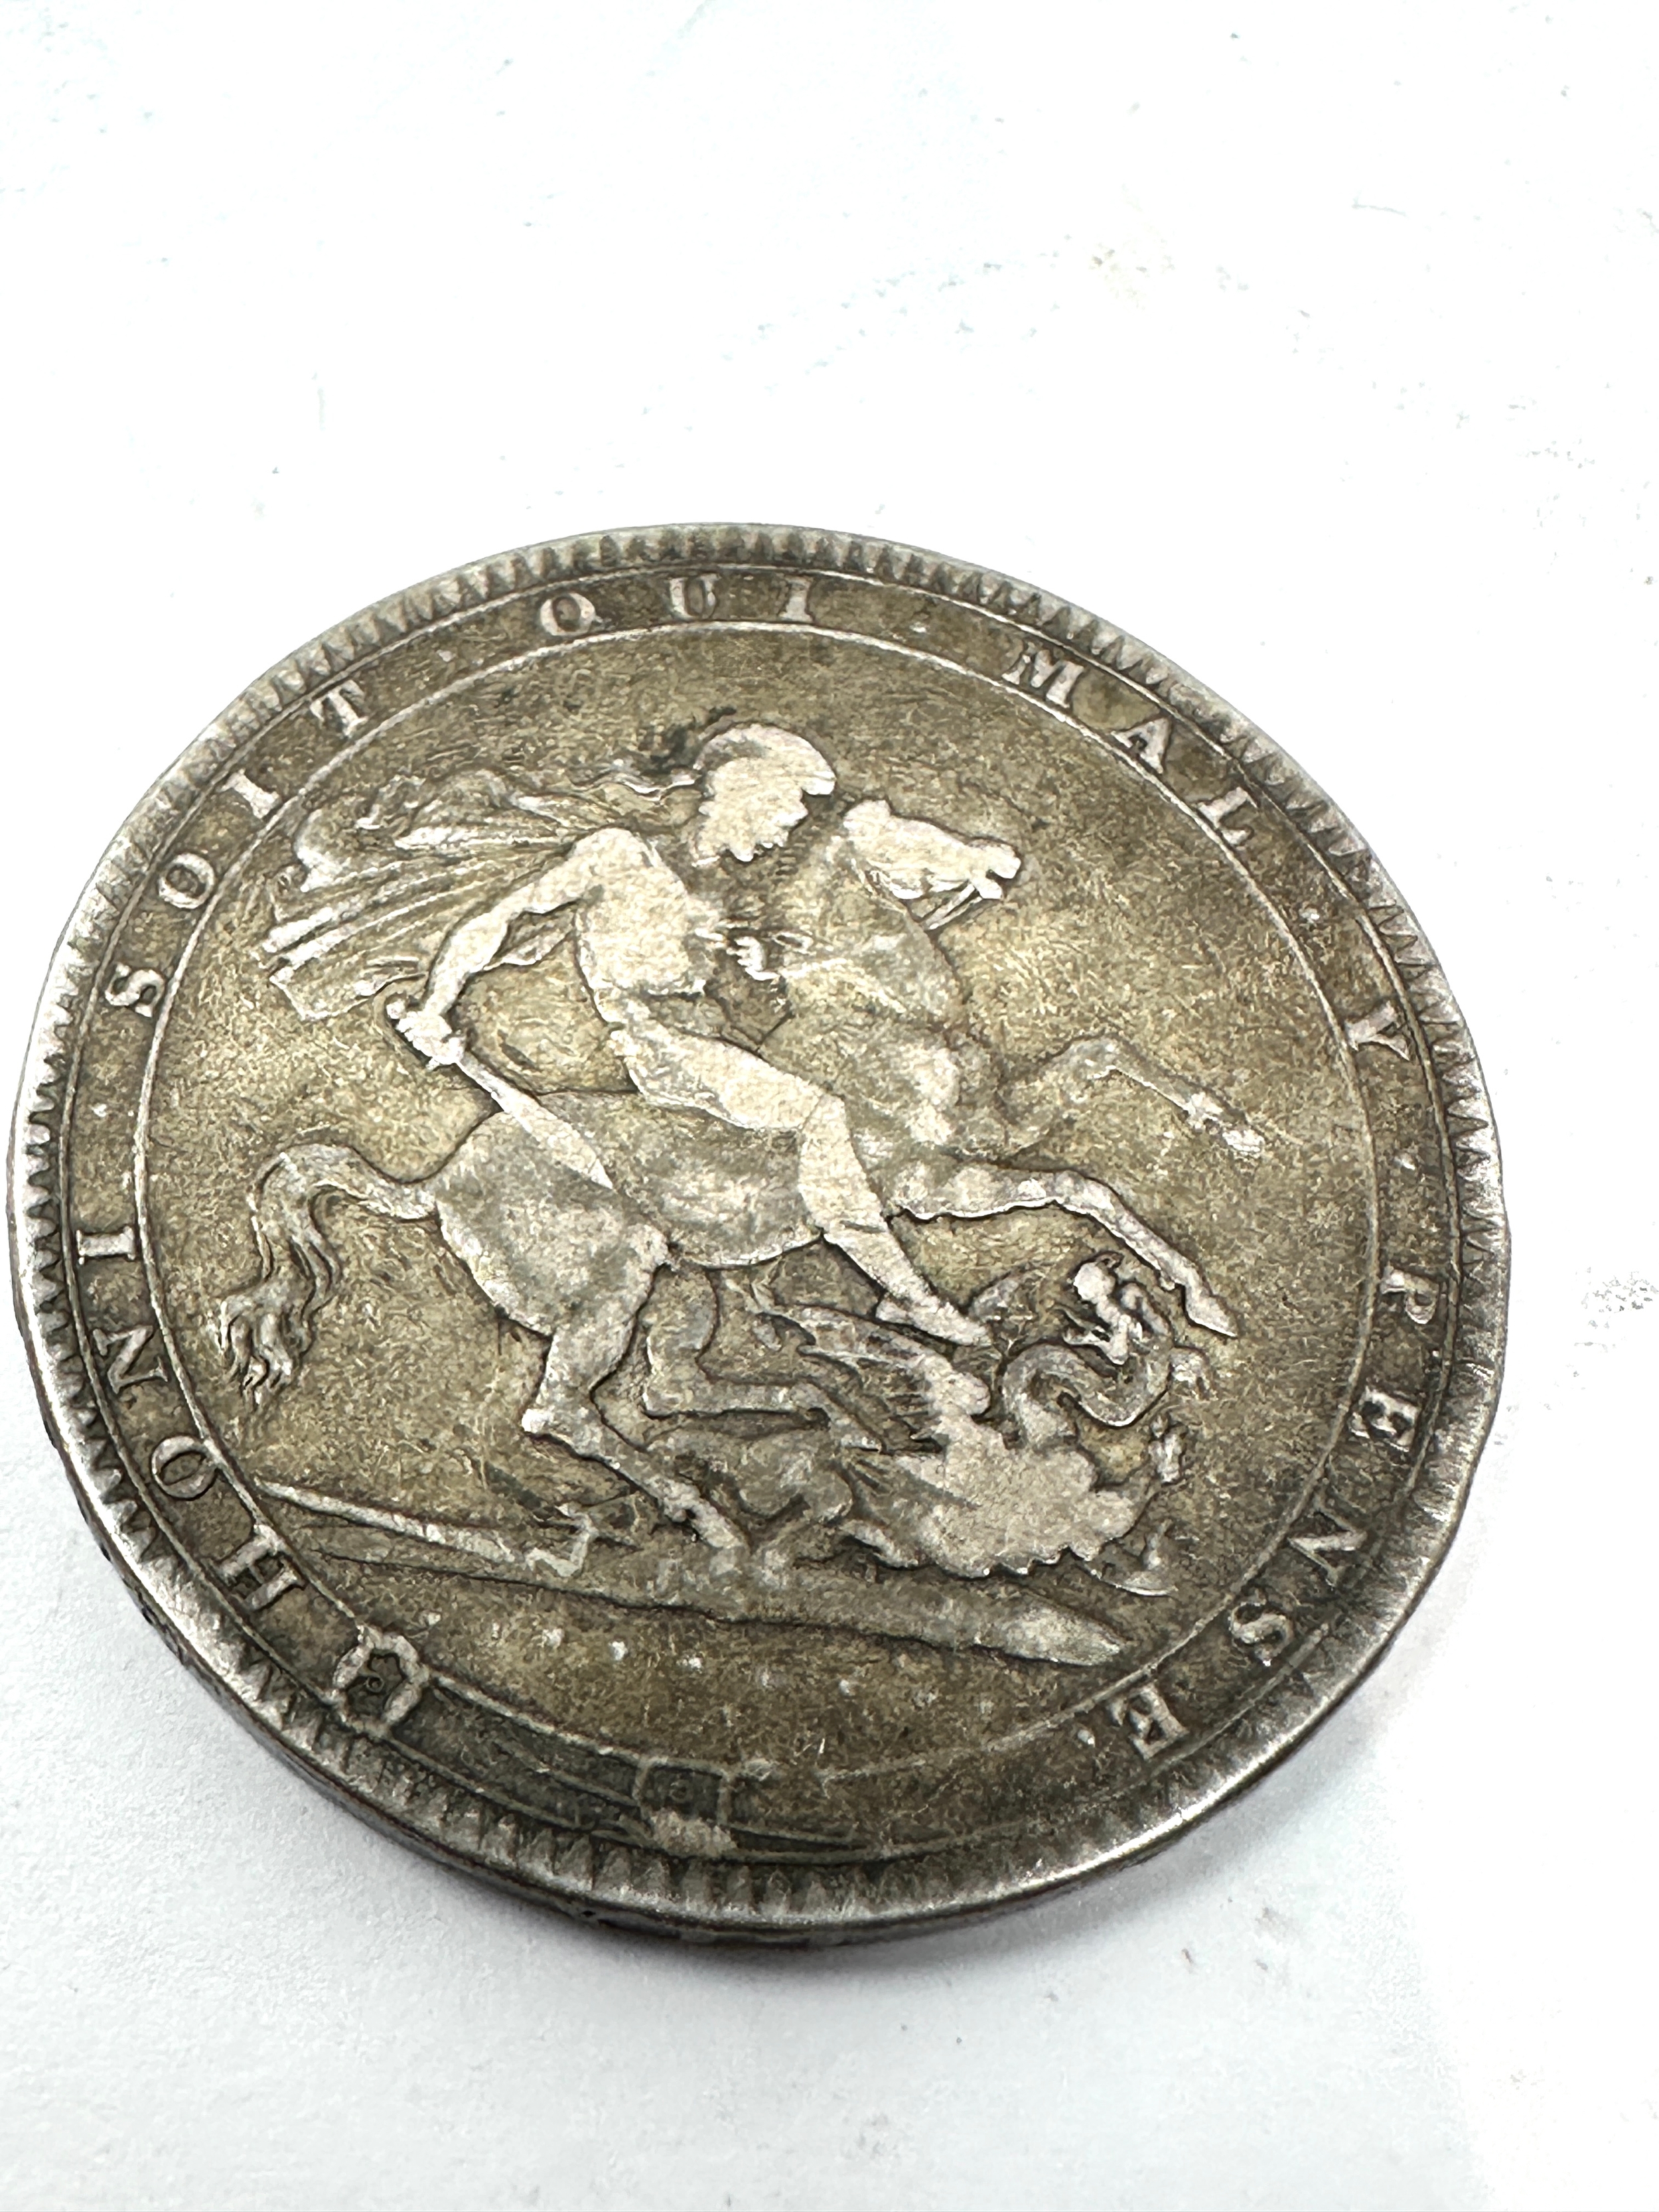 1819 George 111 silver crown - Image 2 of 2